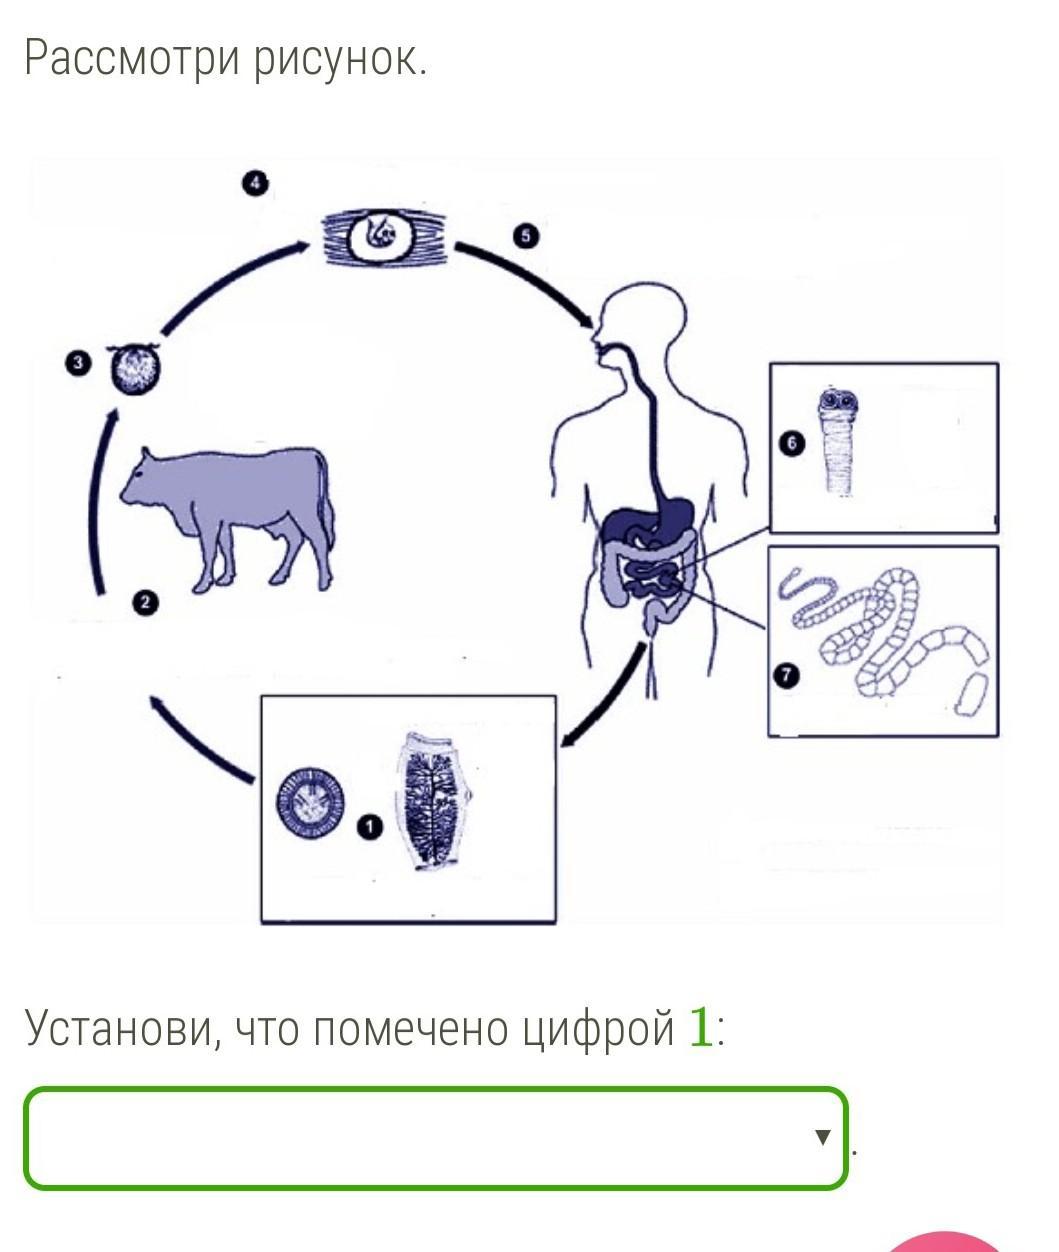 Бычий цепень человек какой хозяин. Схема развития бычьего цепня. Жизненный цикл бычьего цепня. Цикл развития бычьего цепня рисунок. Жизненный цикл бычьего цепня рисунок.